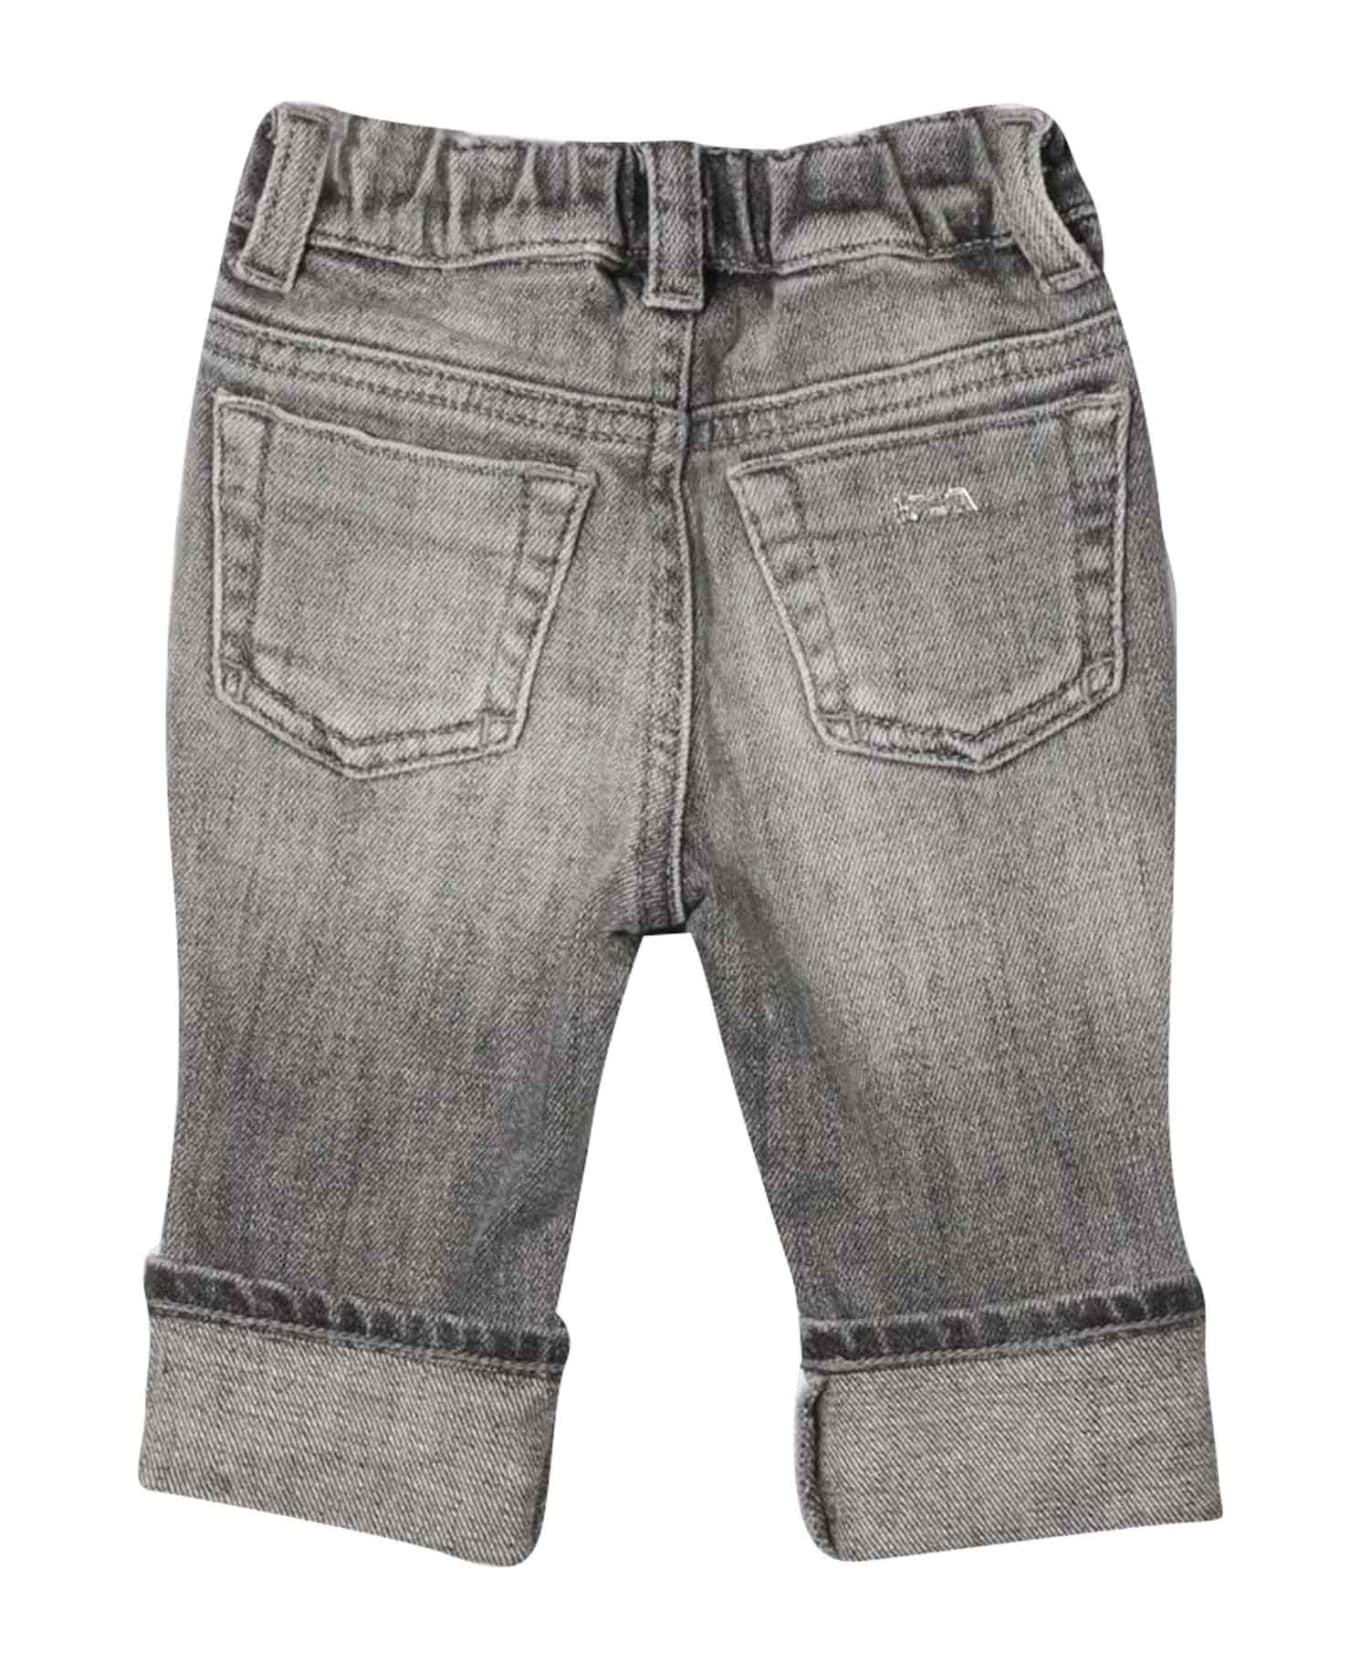 Emporio Armani Newborn Gray Jeans - Denim